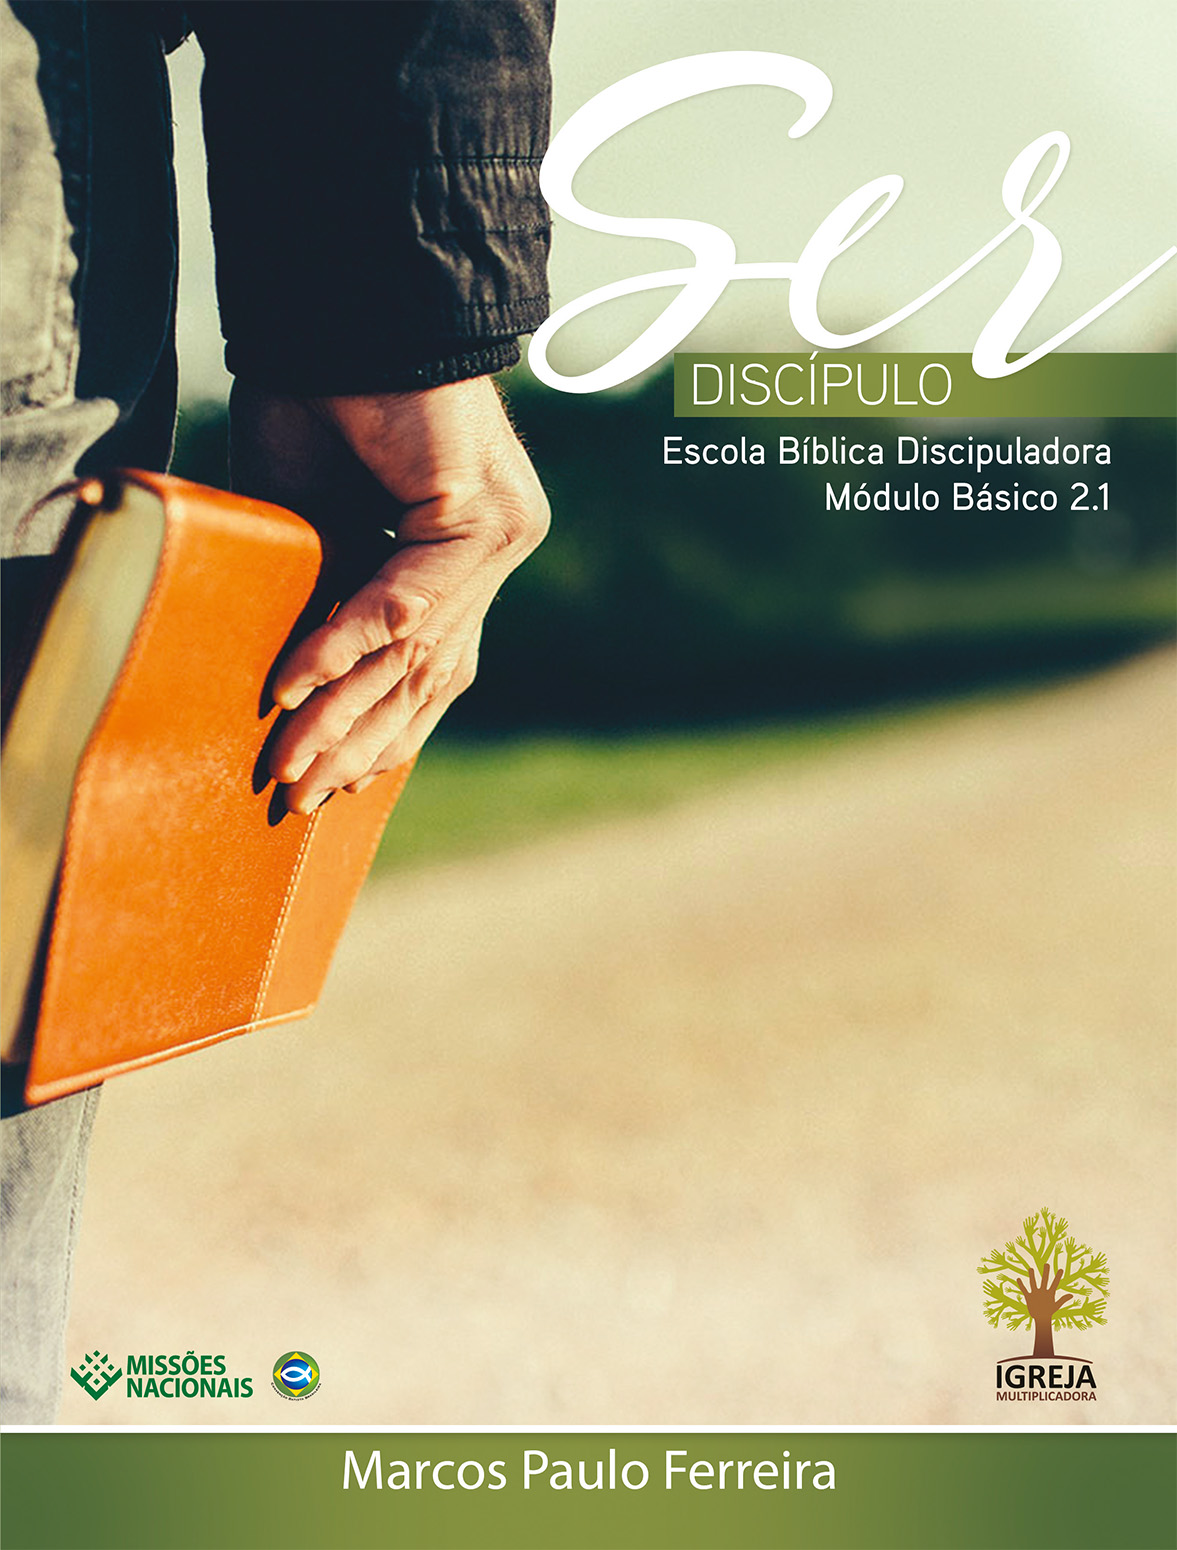 Revista Ser discípulo - Módulo básico 2.1